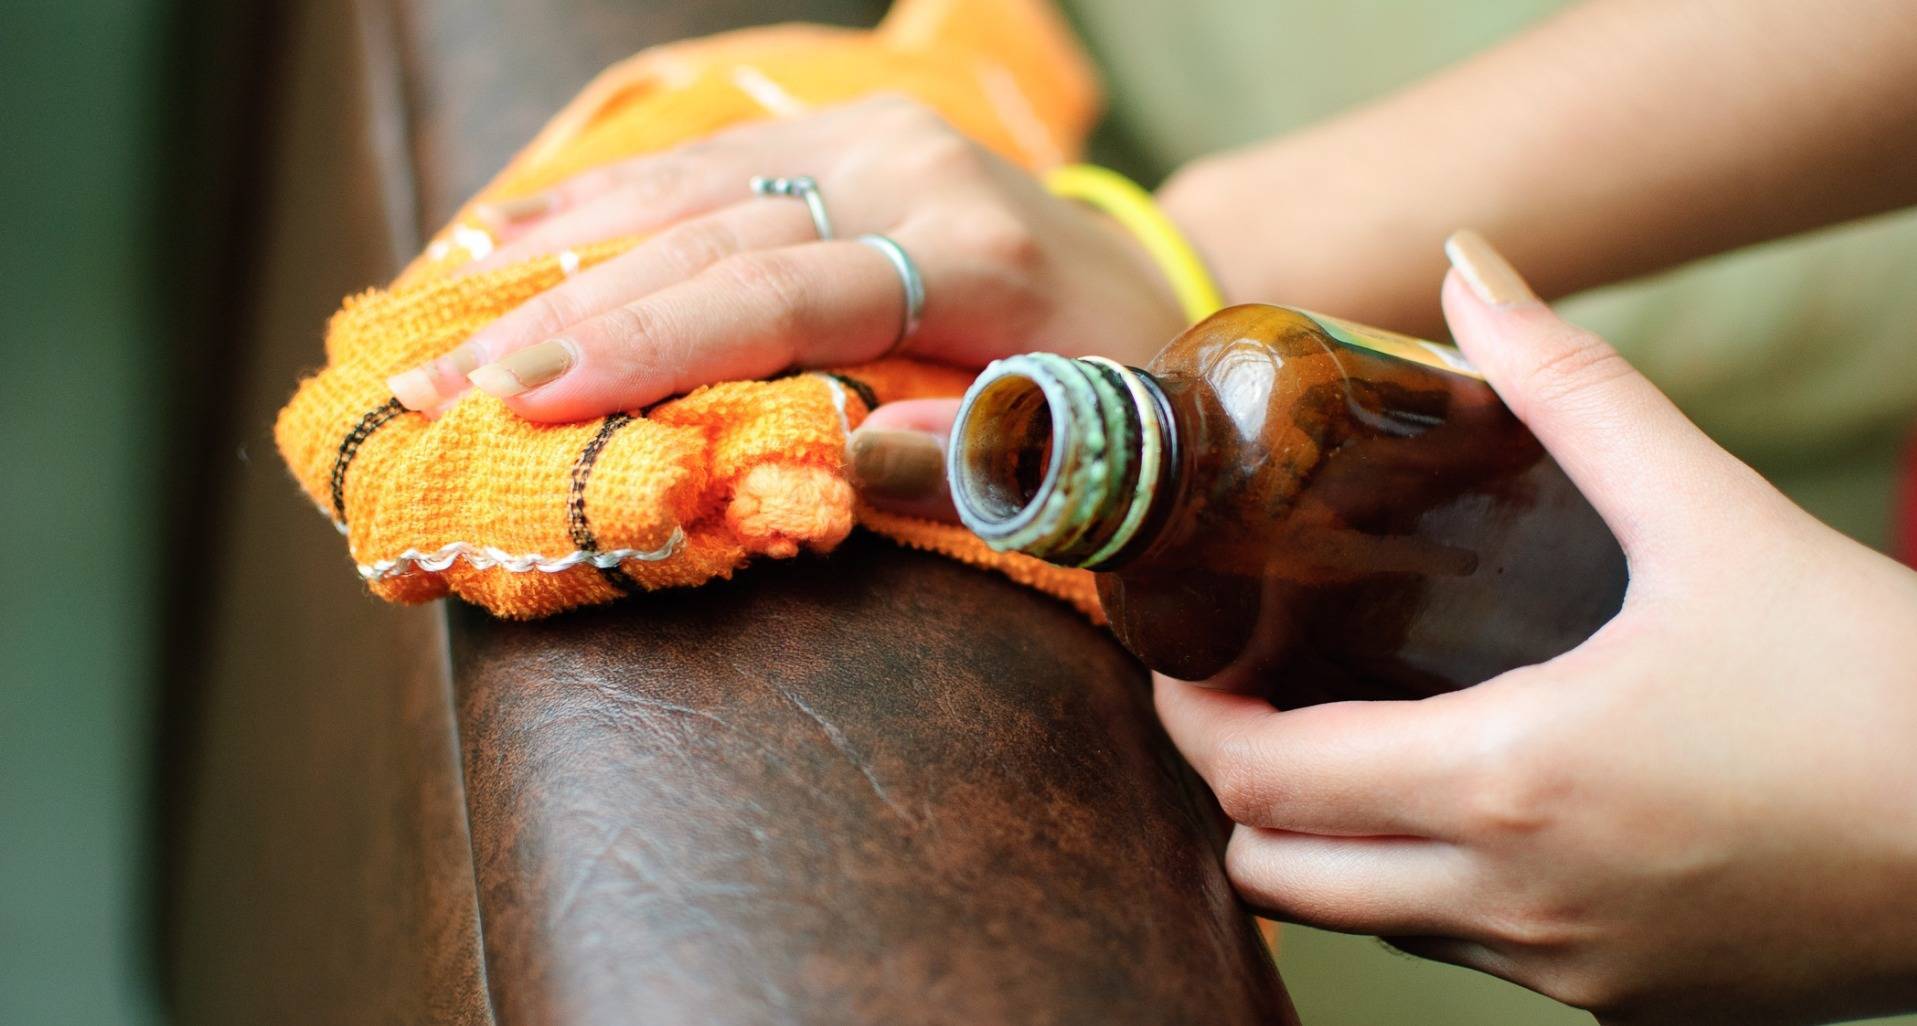 Здоровый портал: борьба с вредными привычками. как избавится от запаха пива в сумке